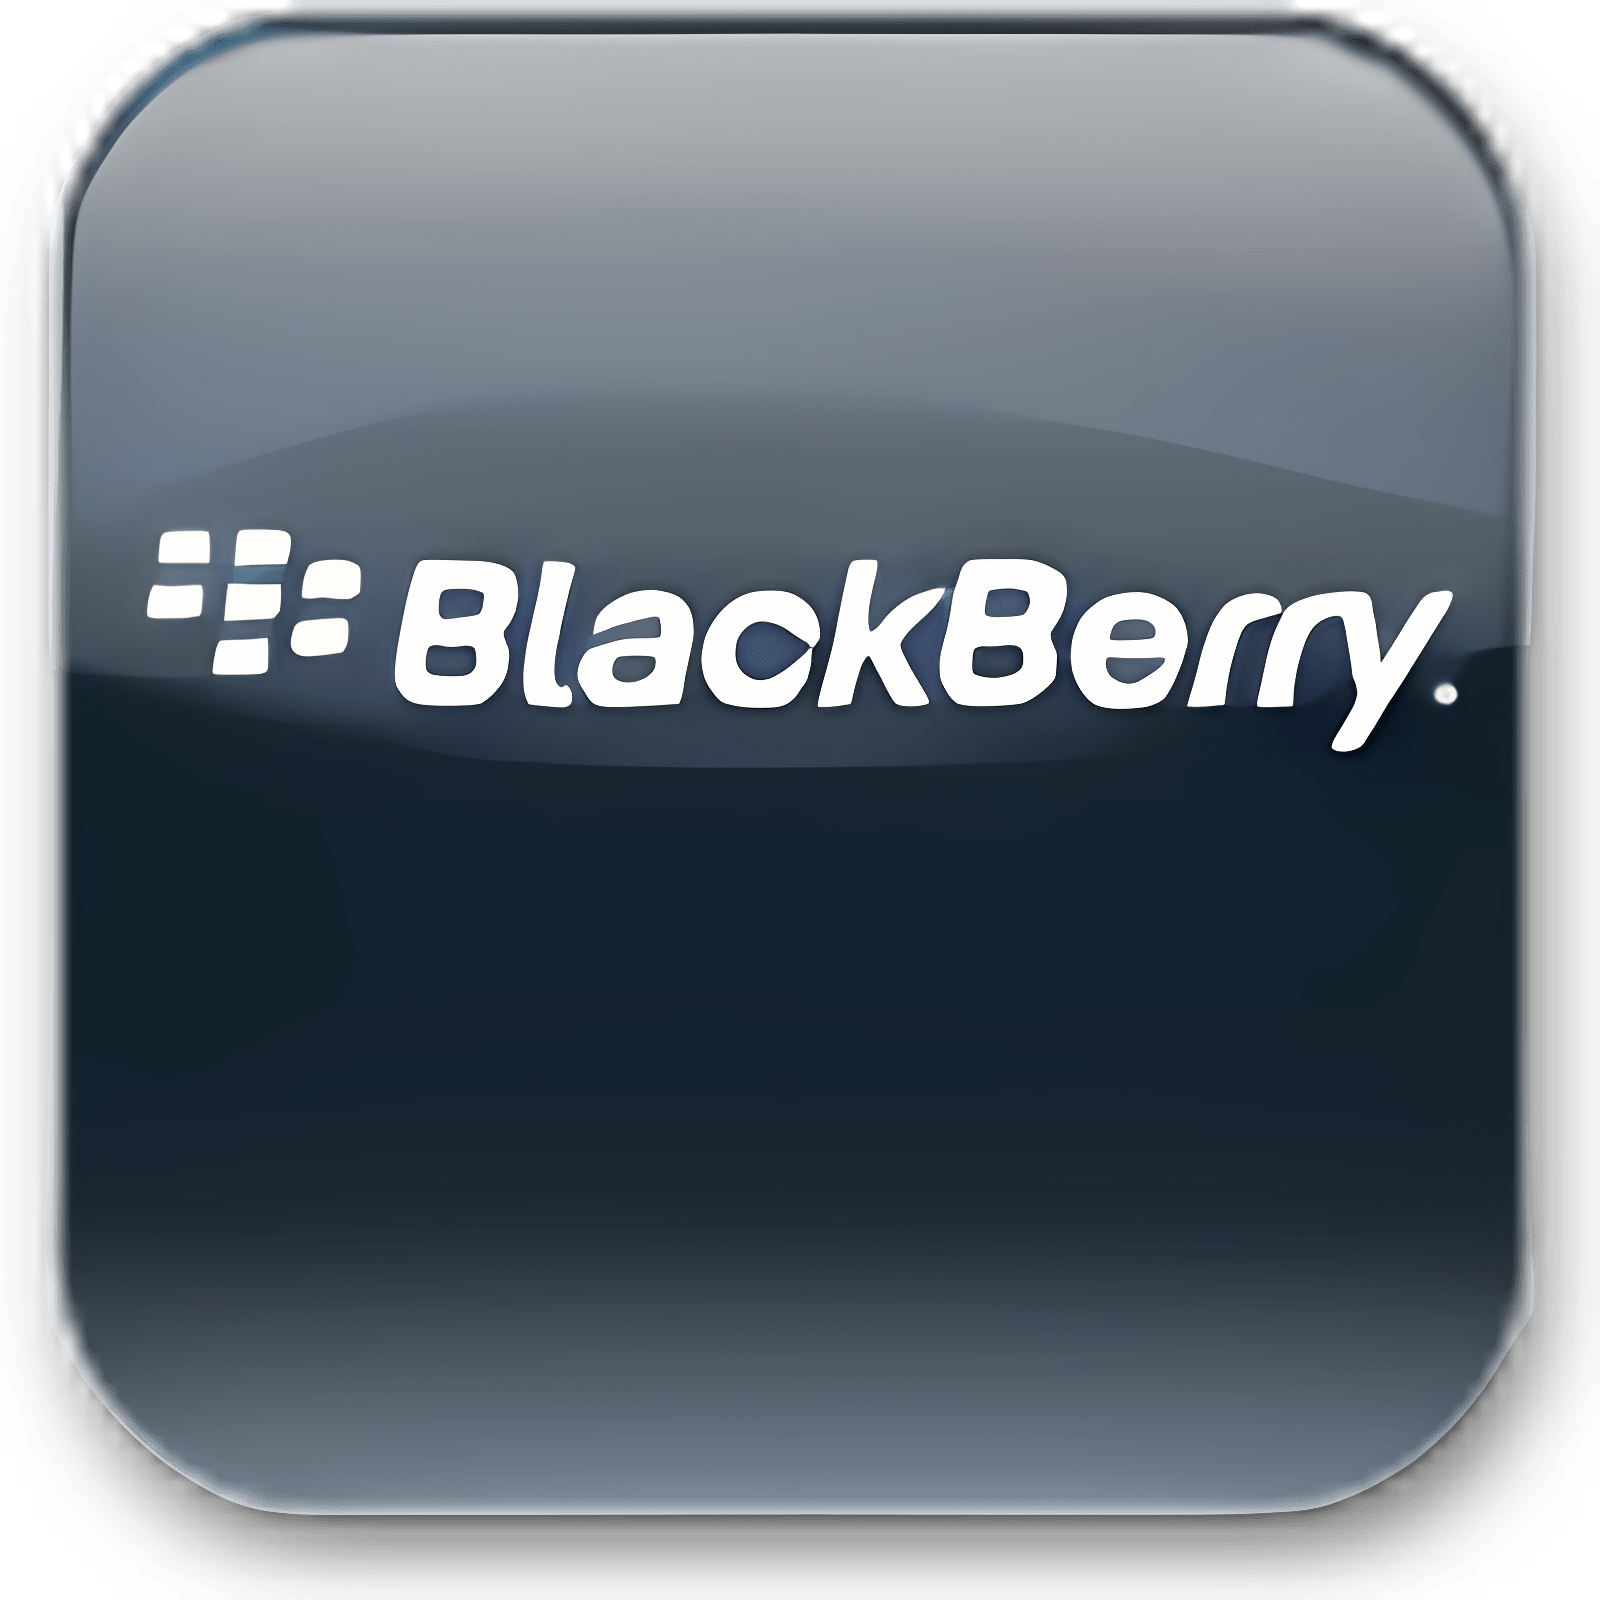 blackberry desktop manager 4.5 download